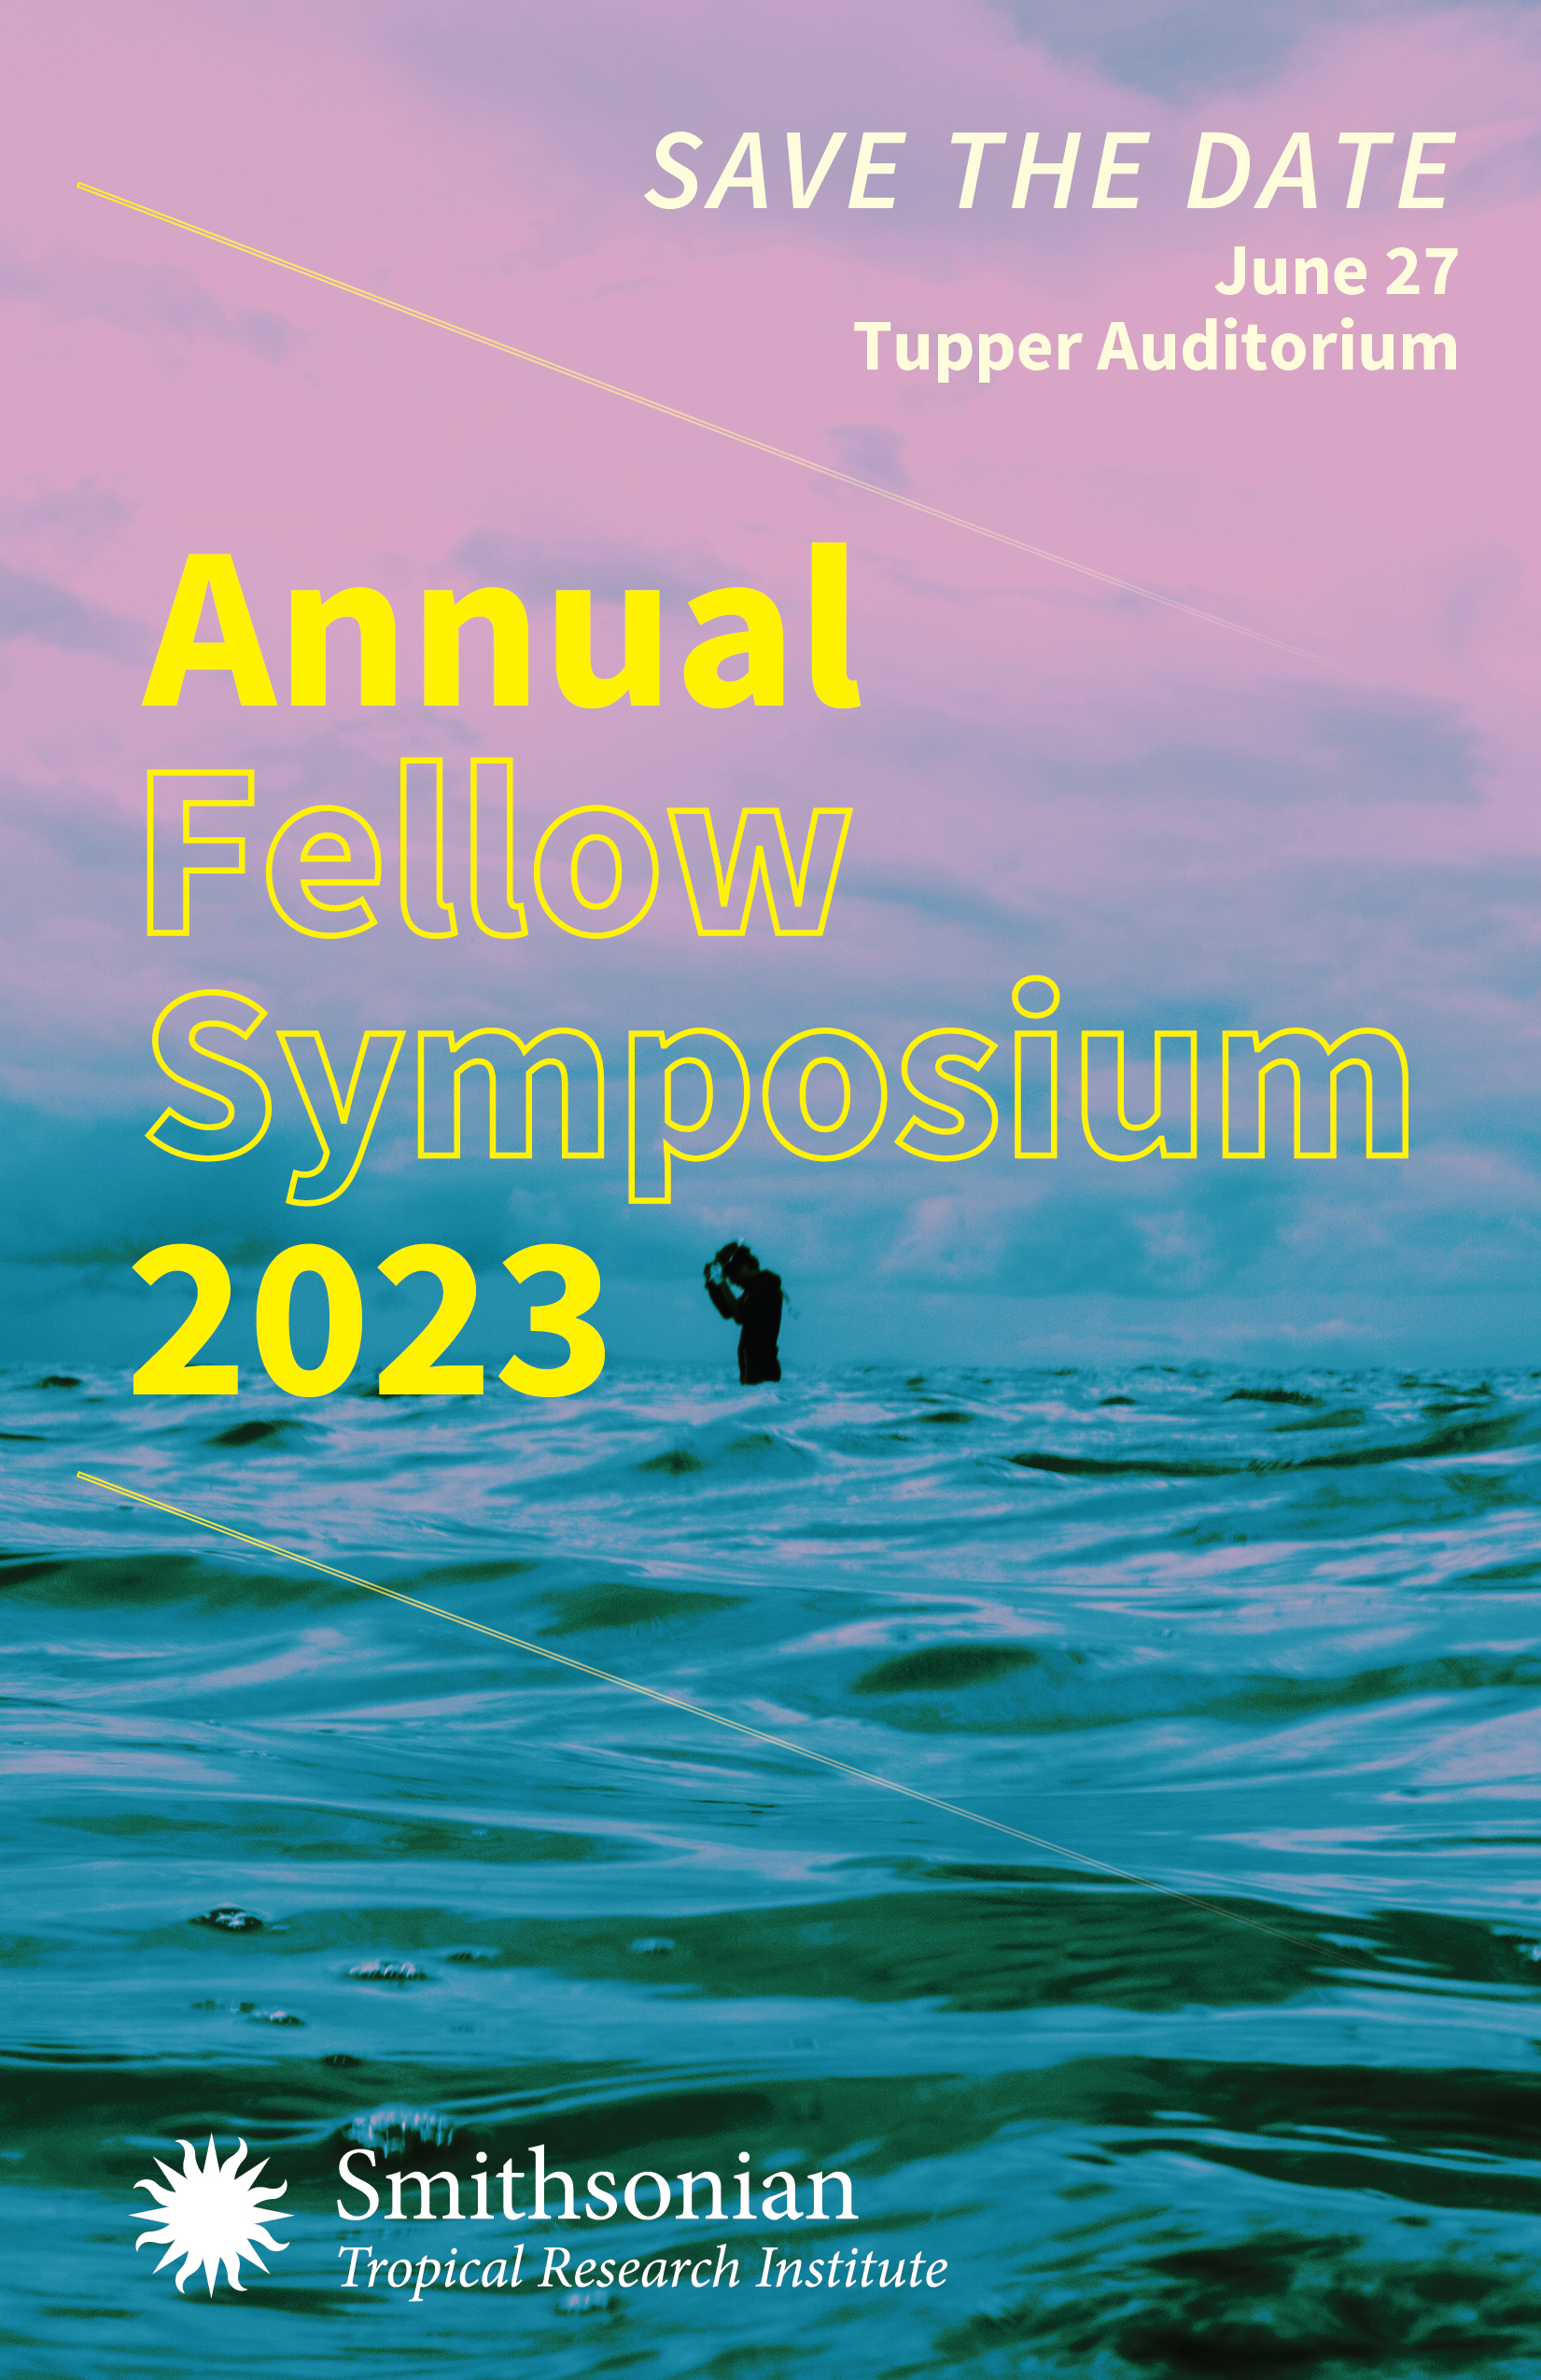 Fellow Symposium 2023